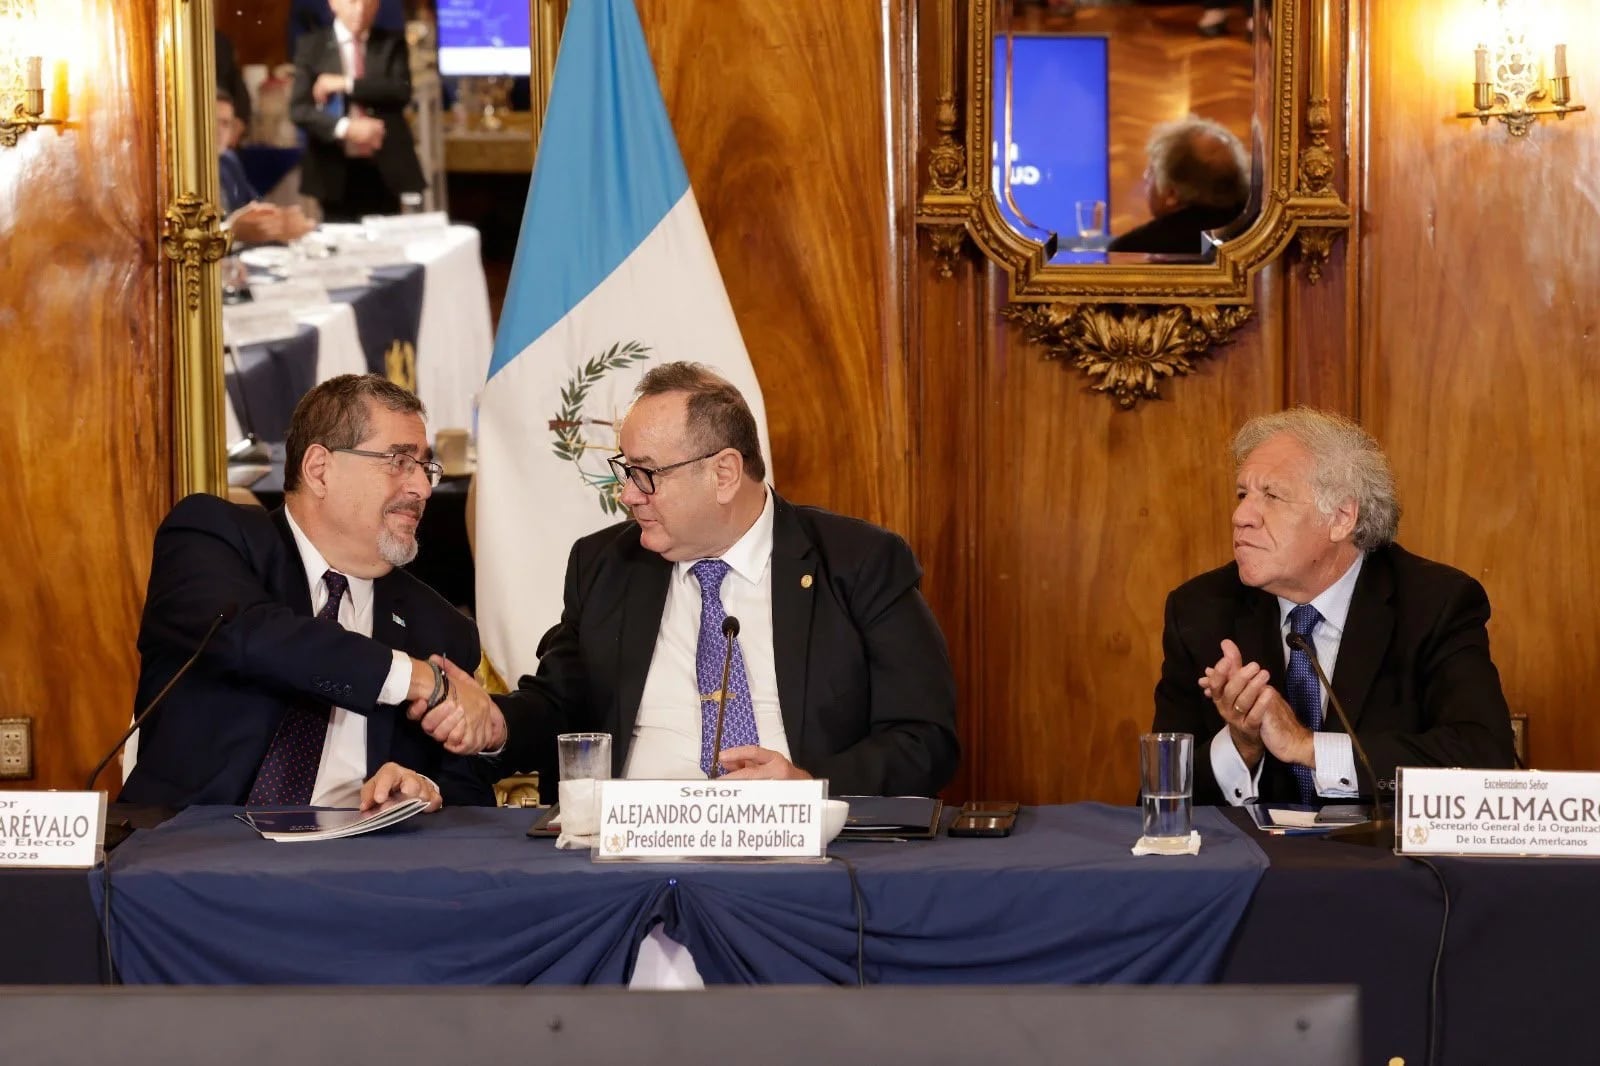 Estados Unidos confía en que Alejandro Giammattei entregará el poder “tal como manda la Constitución” en Guatemala